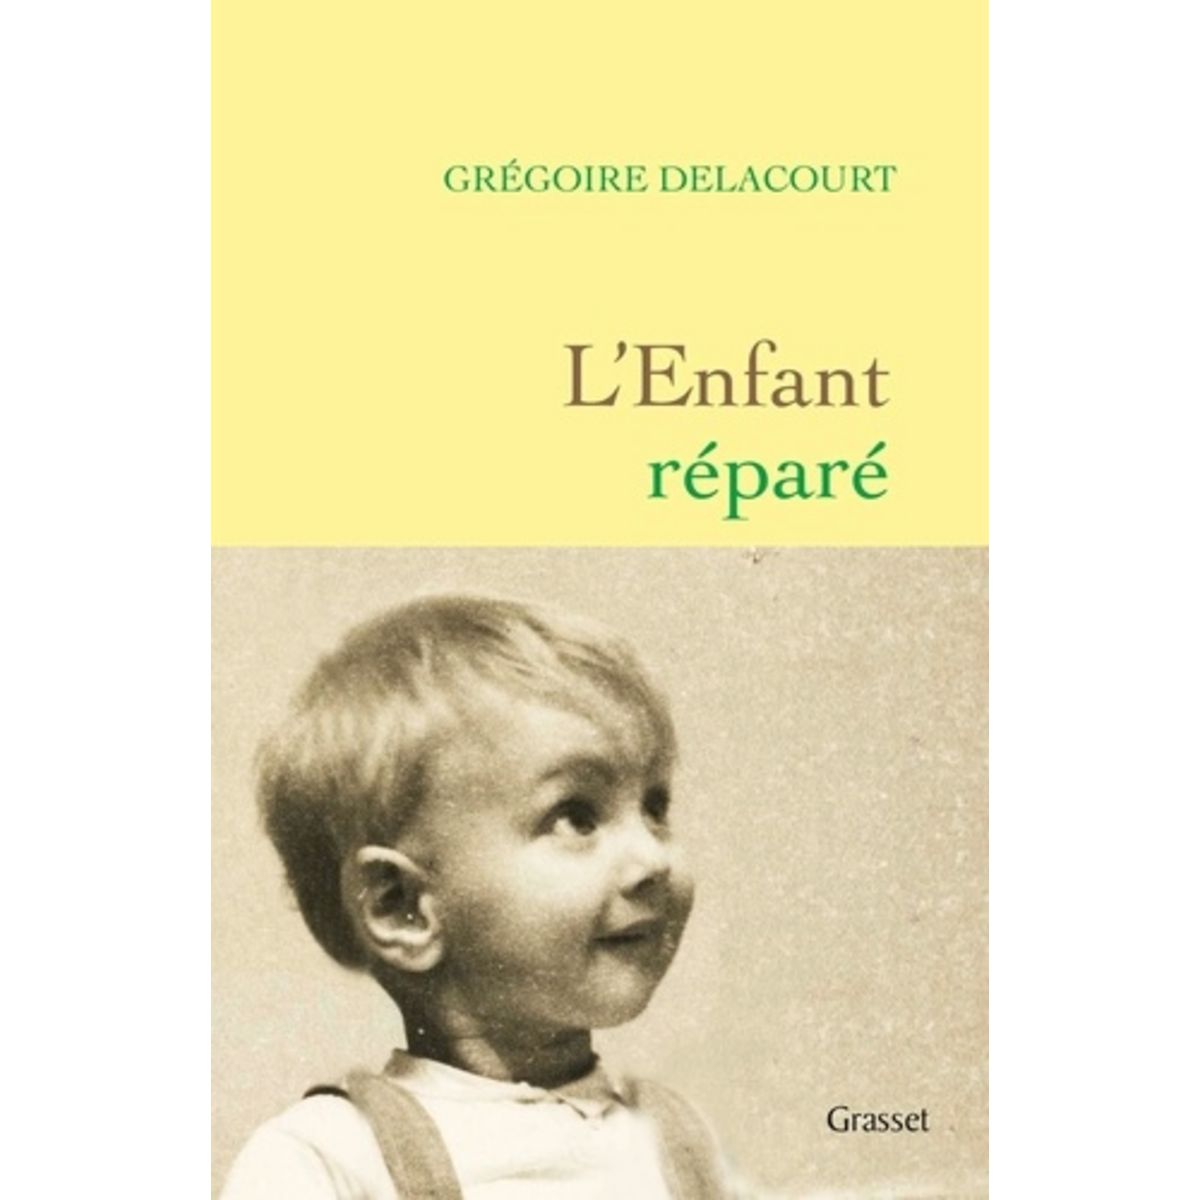  L'ENFANT REPARE, Delacourt Grégoire